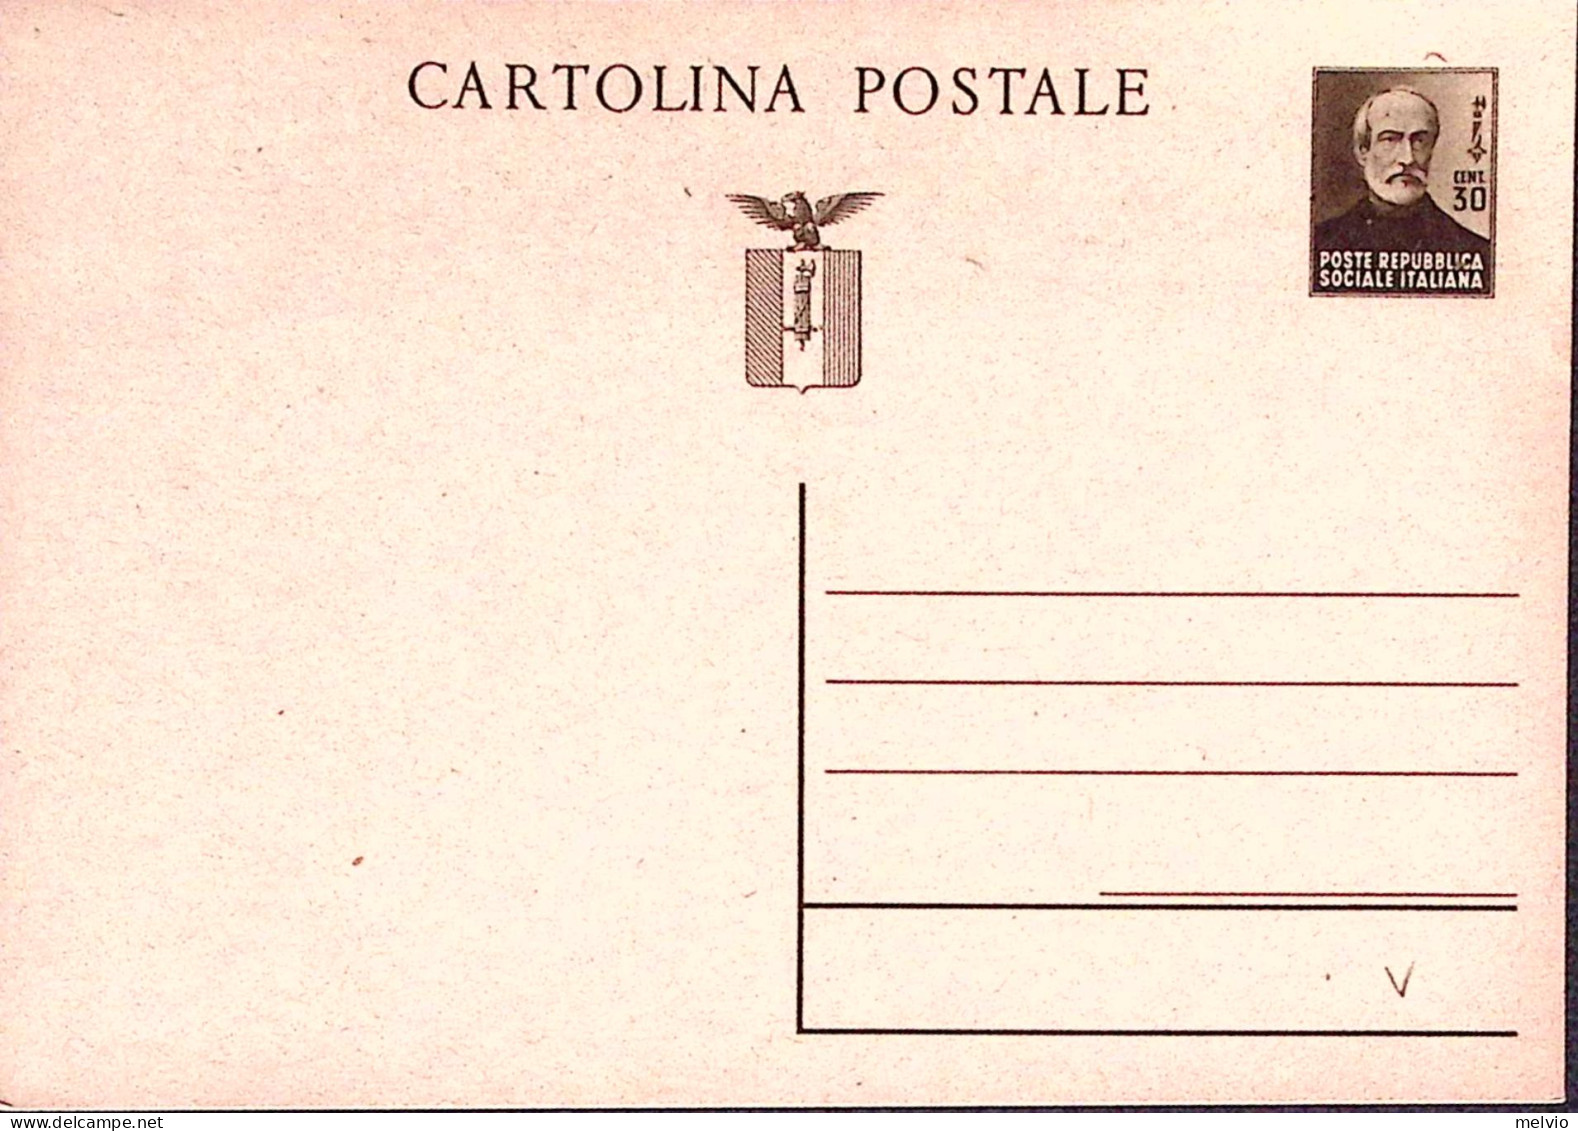 1944-CARTOLINA POSTALE Mazzini C.30 Nuova - Storia Postale